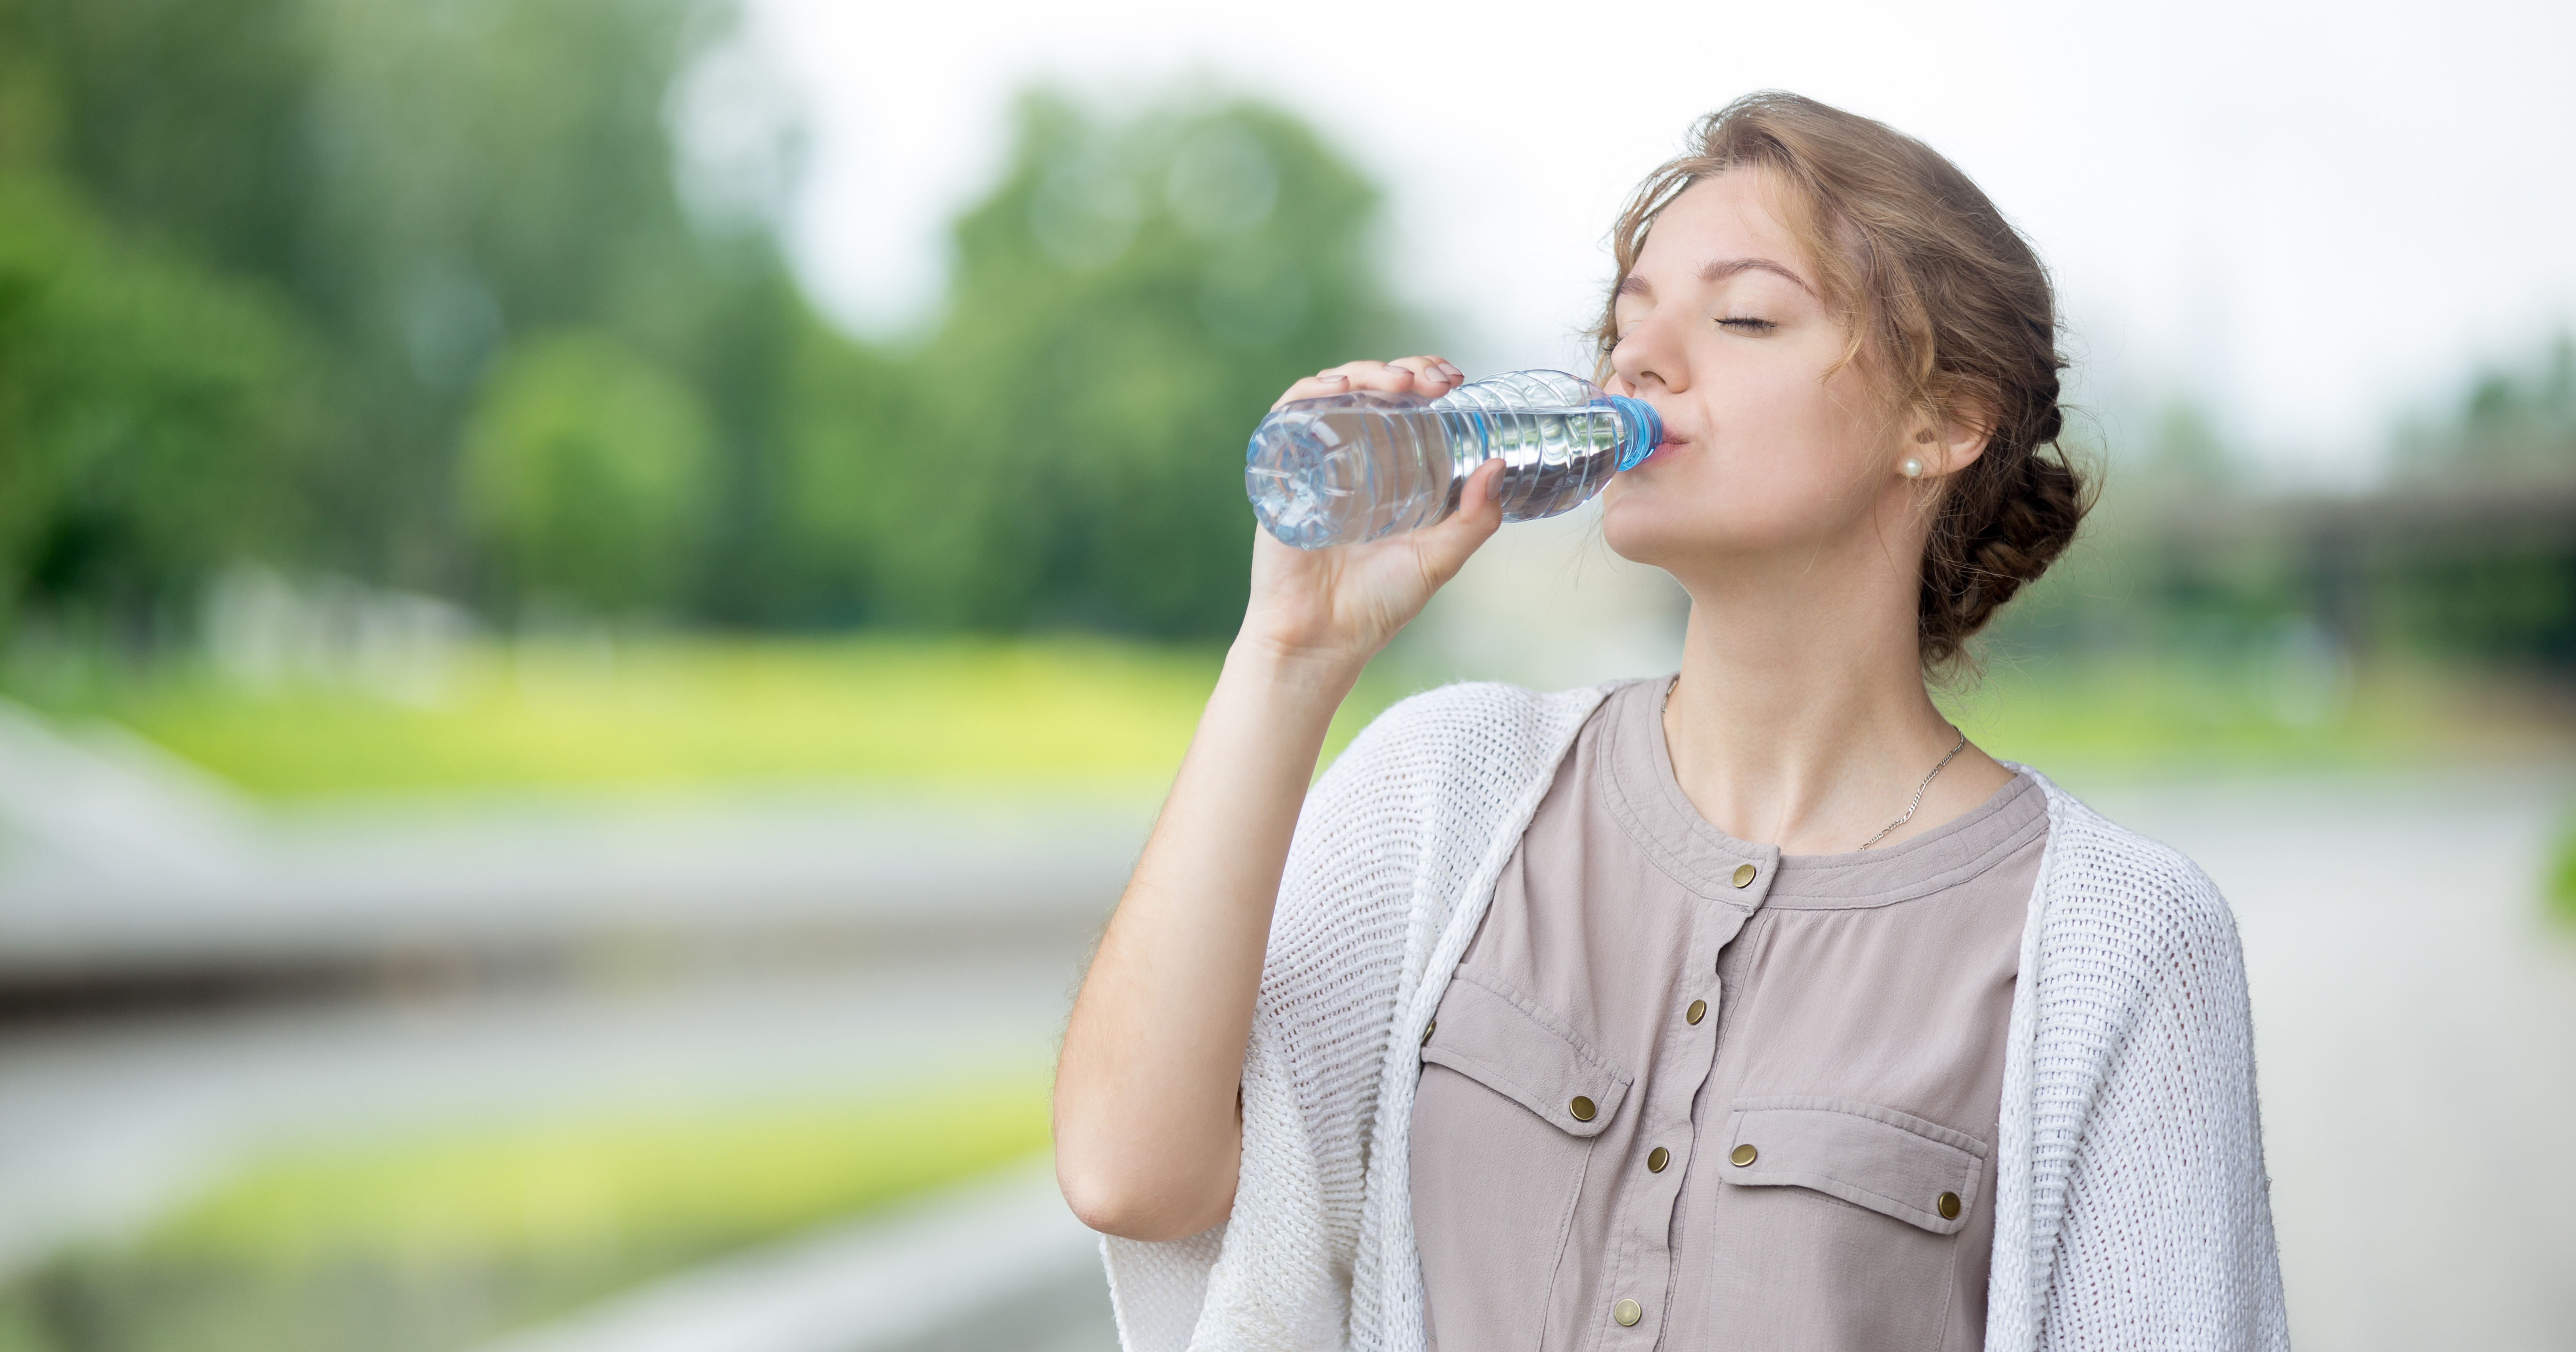 Água: a hidratação natural para a sua pele